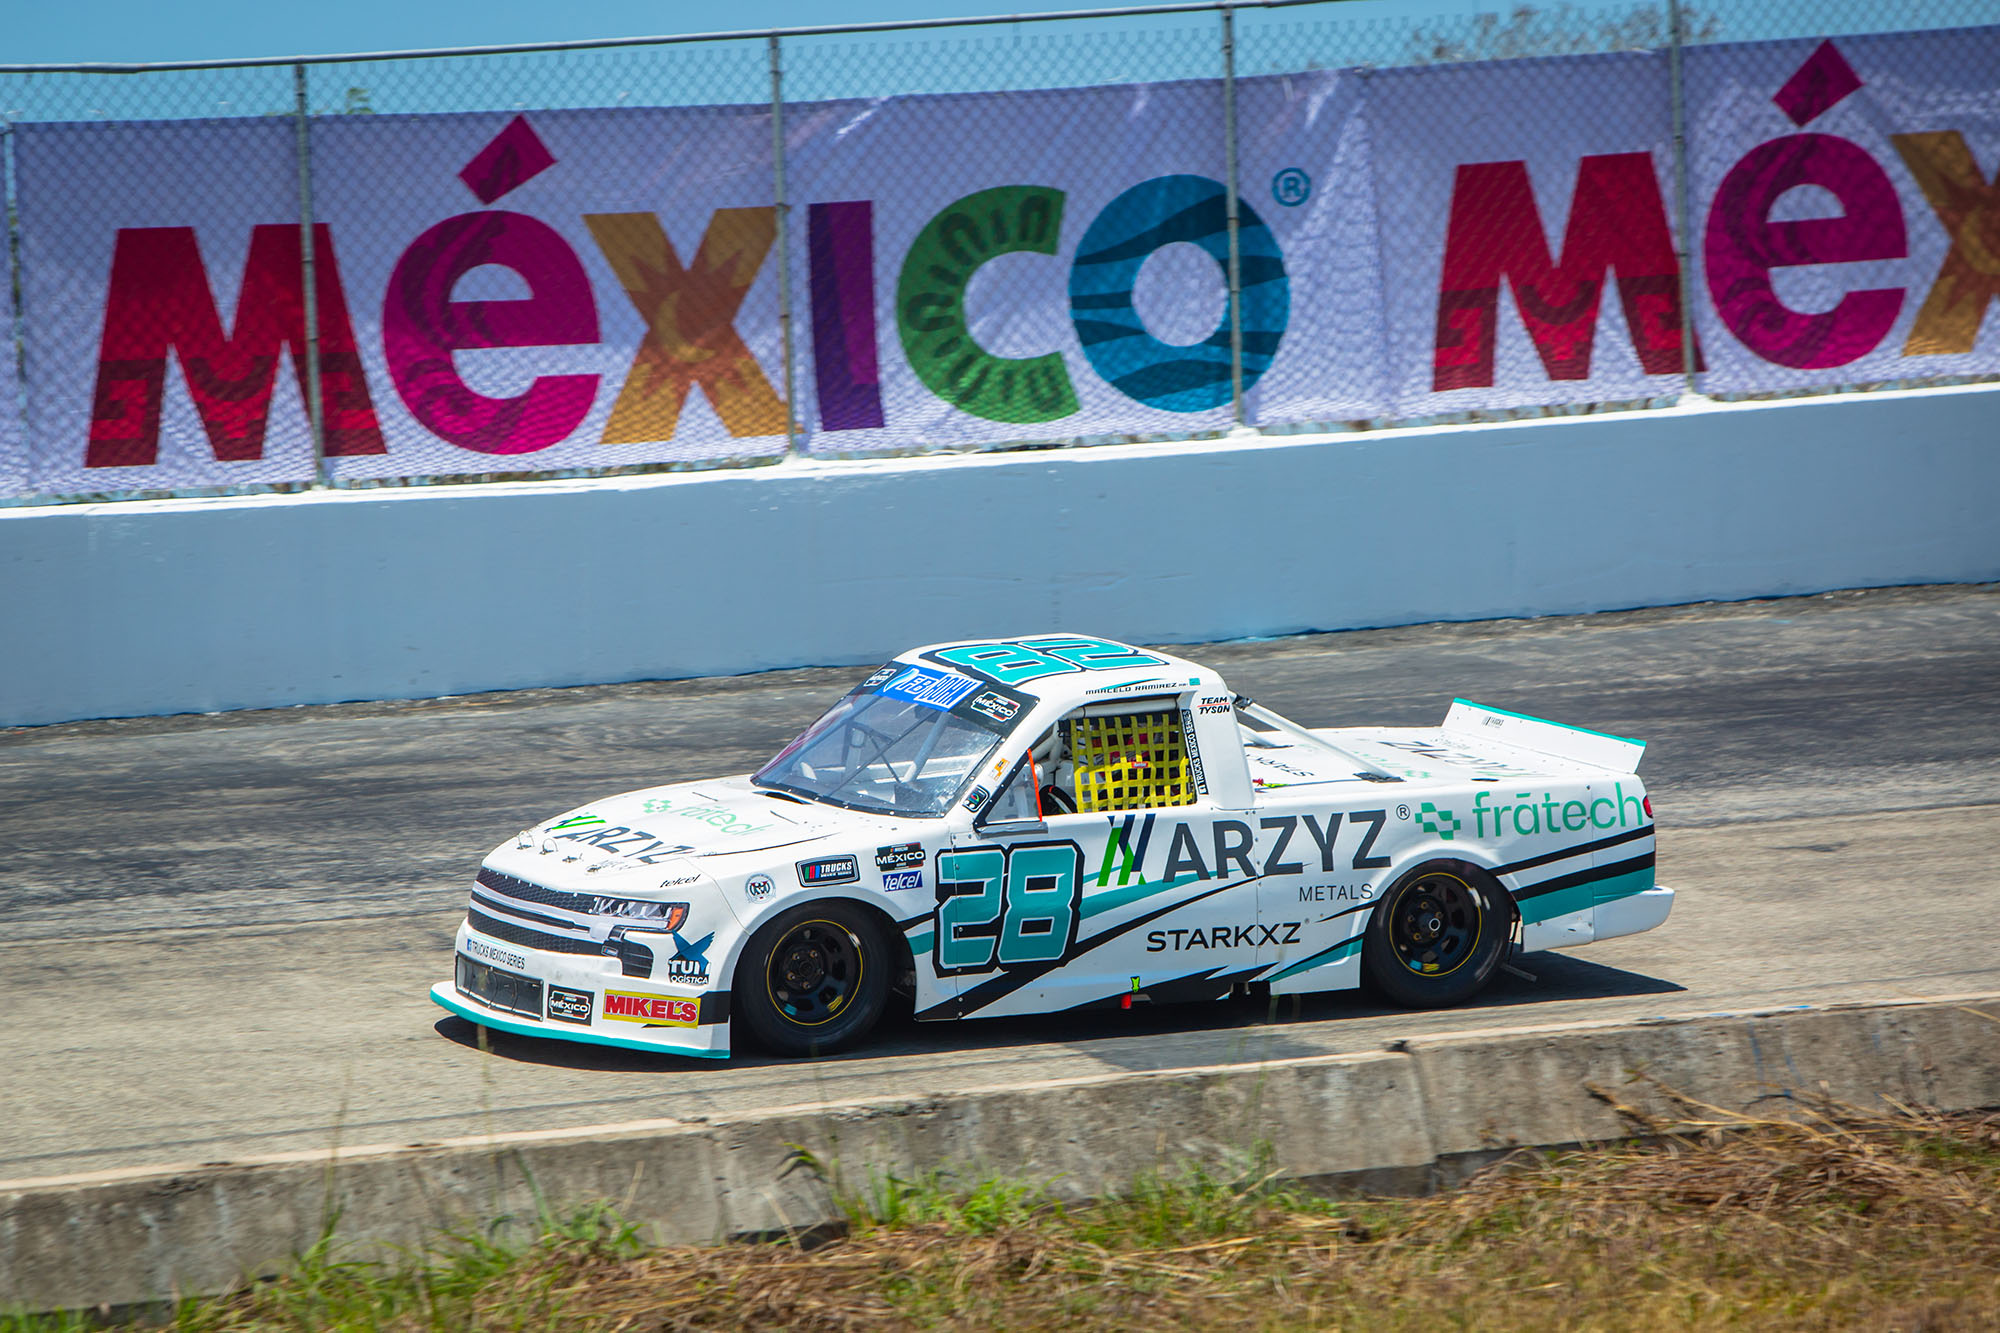 Top 5 para la Escudería Arzyz-Fratech-Starkxz a manos de Enrique Baca en NASCAR México